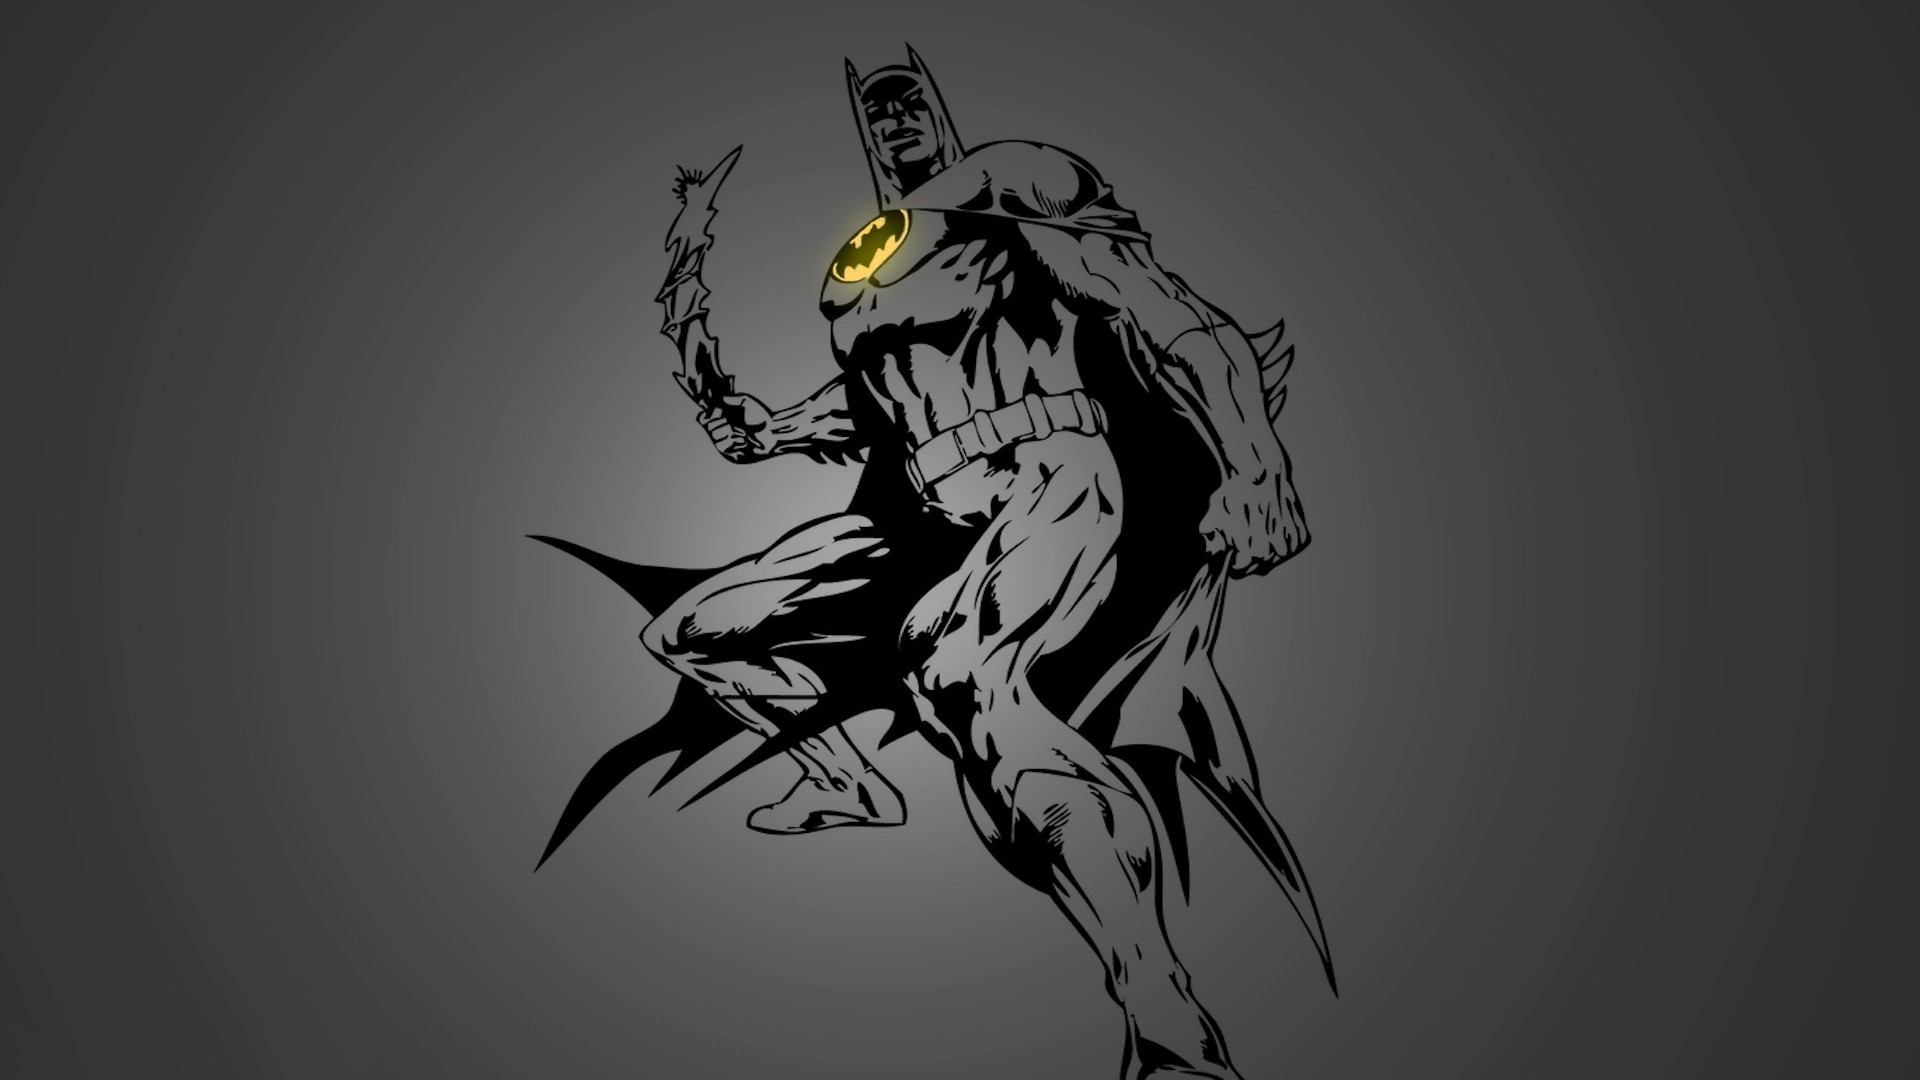 fondo de pantalla de batman 1080p,hombre murciélago,personaje de ficción,ilustración,bosquejo,dibujo